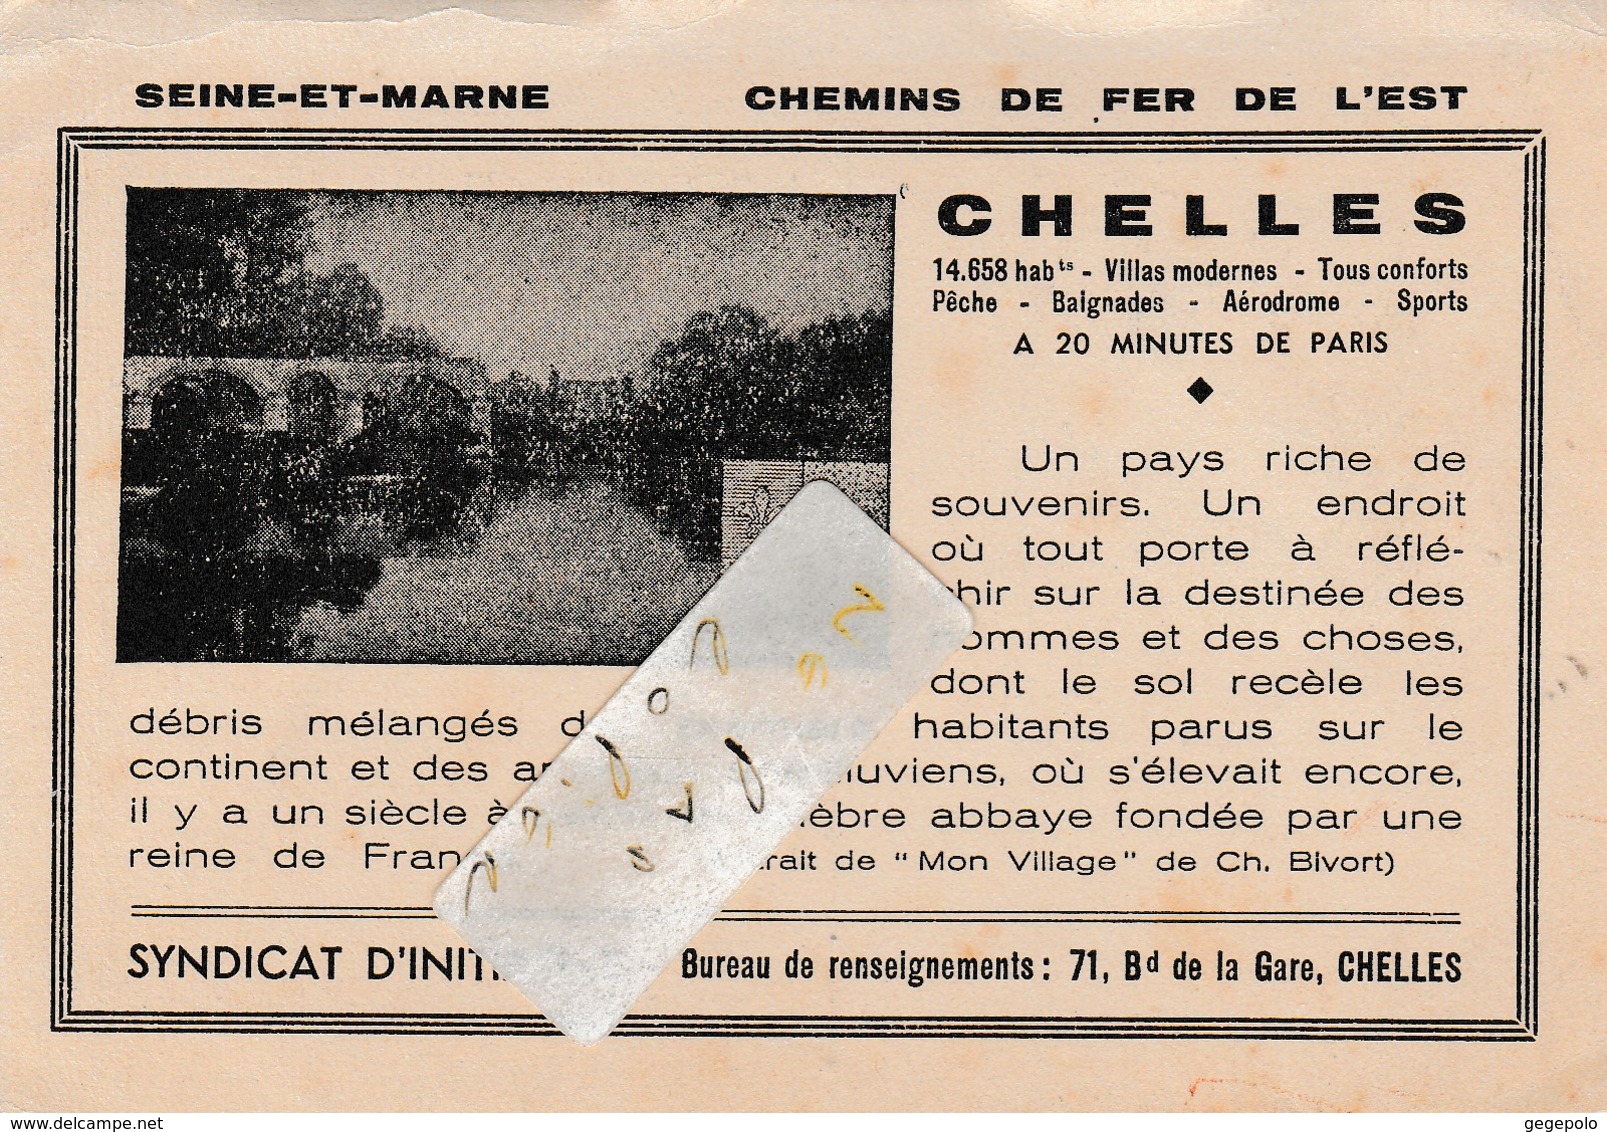 CHELLES - Chemins De Fer De L' Est  - Syndicat D'Initiative , 71 Boulevard De La Gare - Exposition Aout 1937 - Chelles